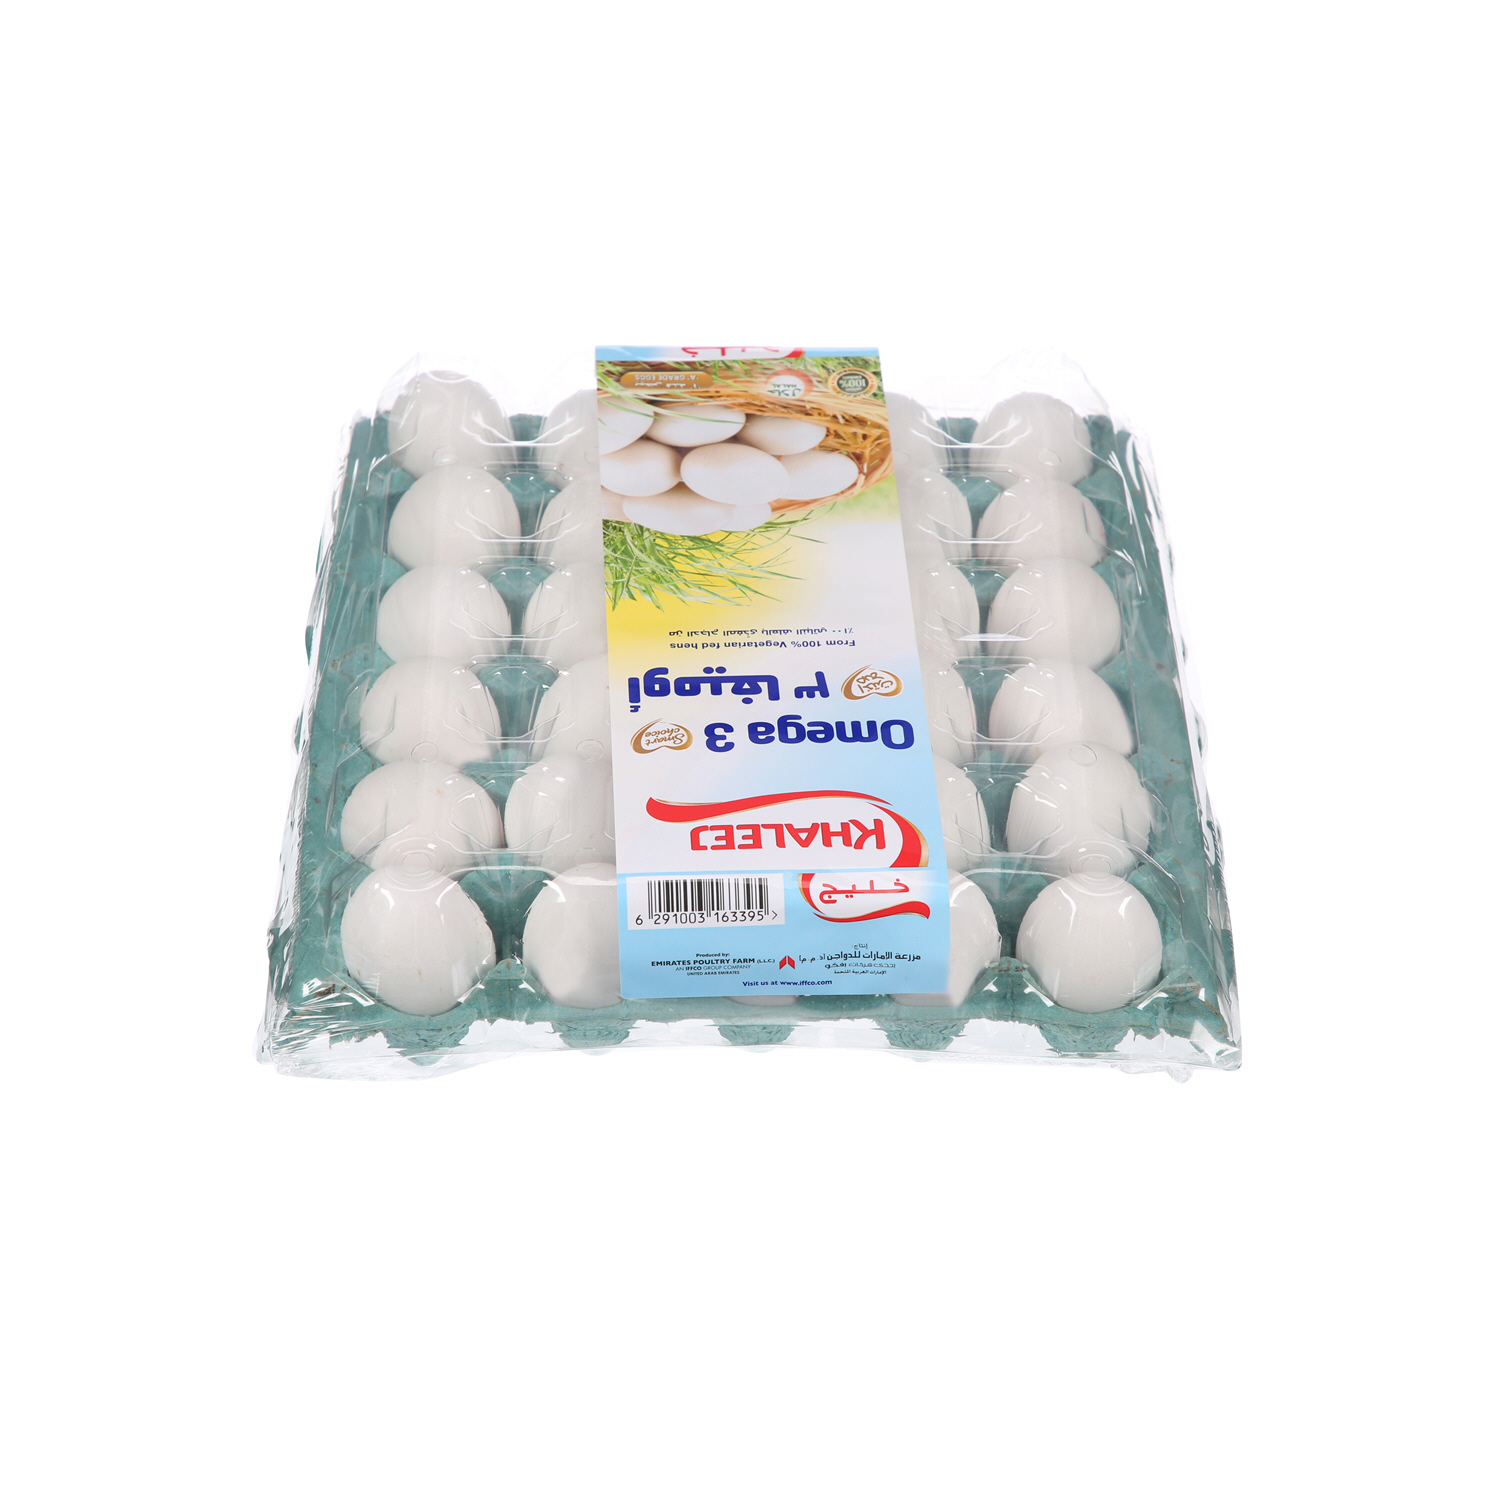 Khaleej White Omega 3 Eggs 30 Pack